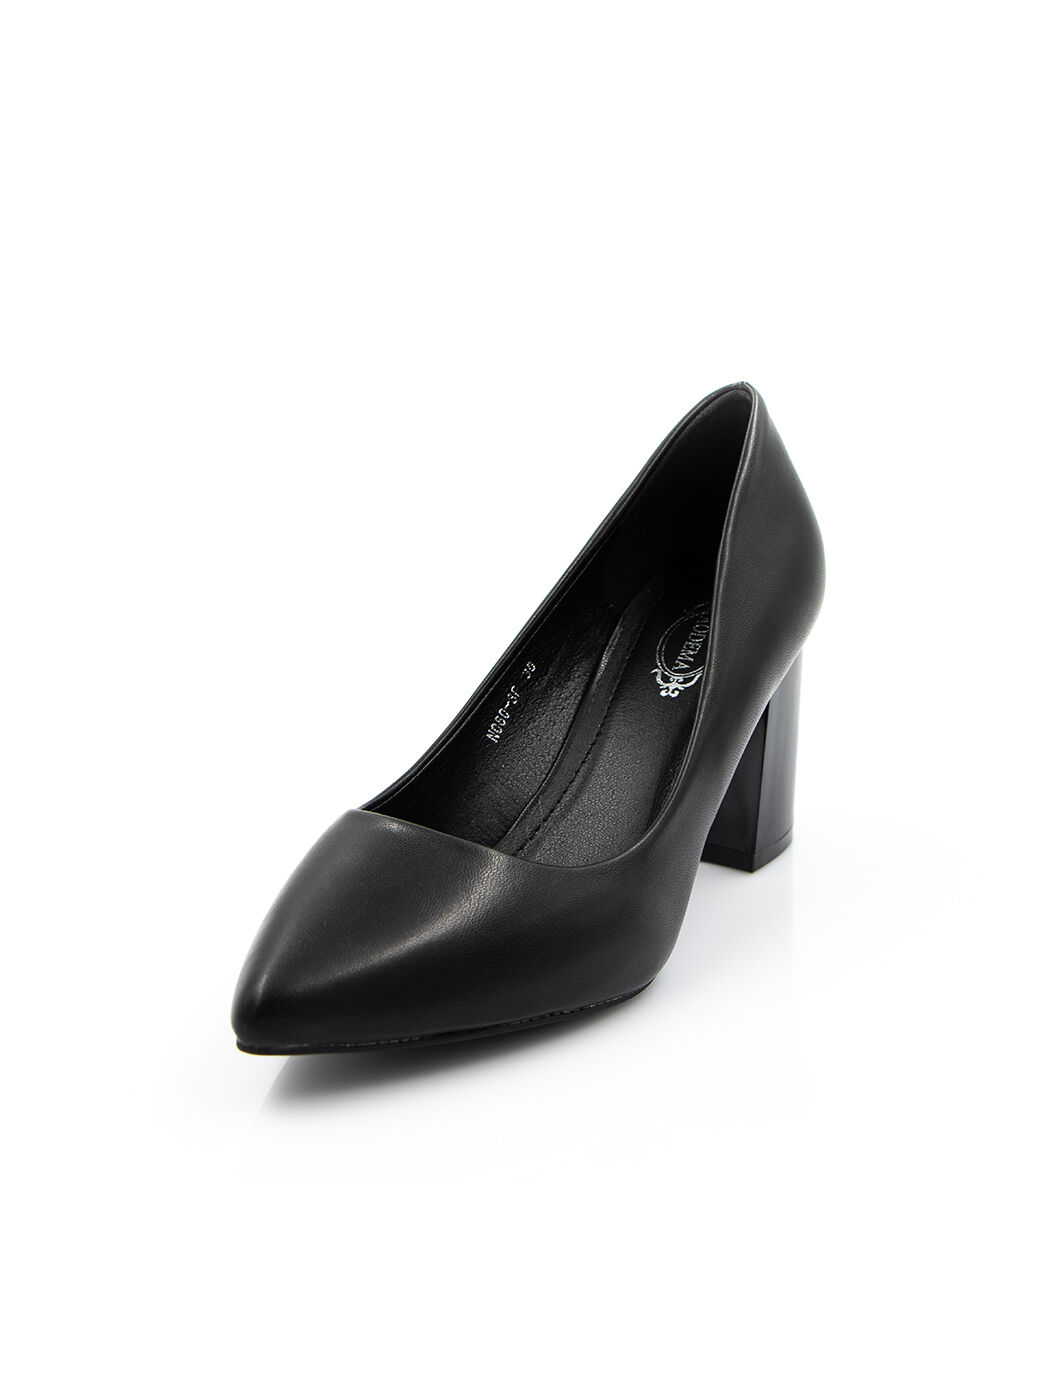 Туфли женские черные экокожа каблук устойчивый демисезон от производителя FM вид 0